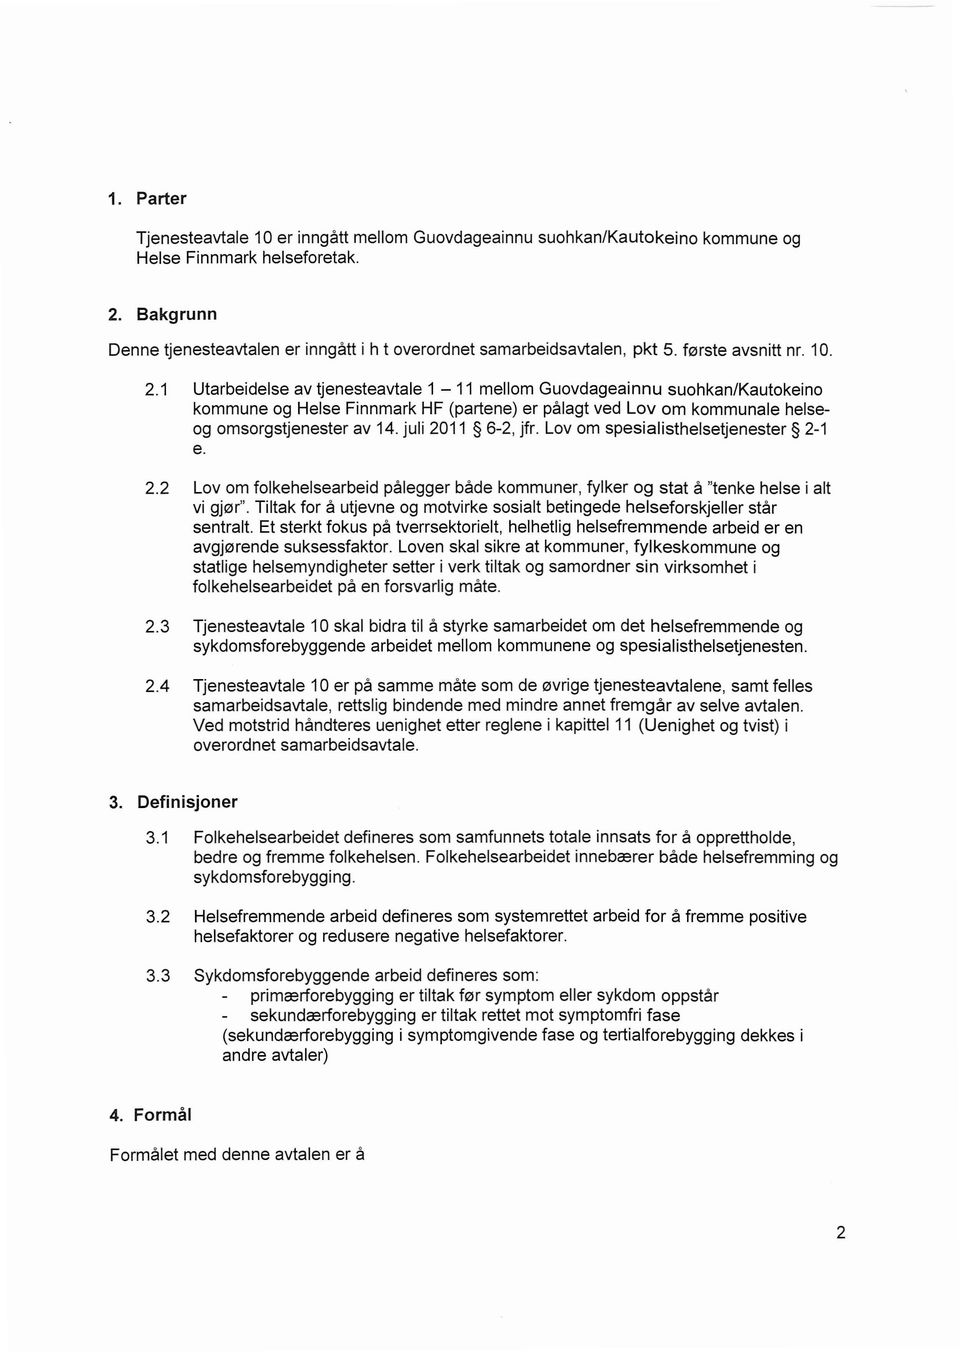 1 Utarbeidelse av tjenesteavtale 1-11 mellom Guovdageainnu suohkan/kautokeino kommune og Helse Finnmark HF (partene) er pålagt ved Lov om kommunale helseog omsorgstjenester av 14. juli 2011 6-2, jfr.